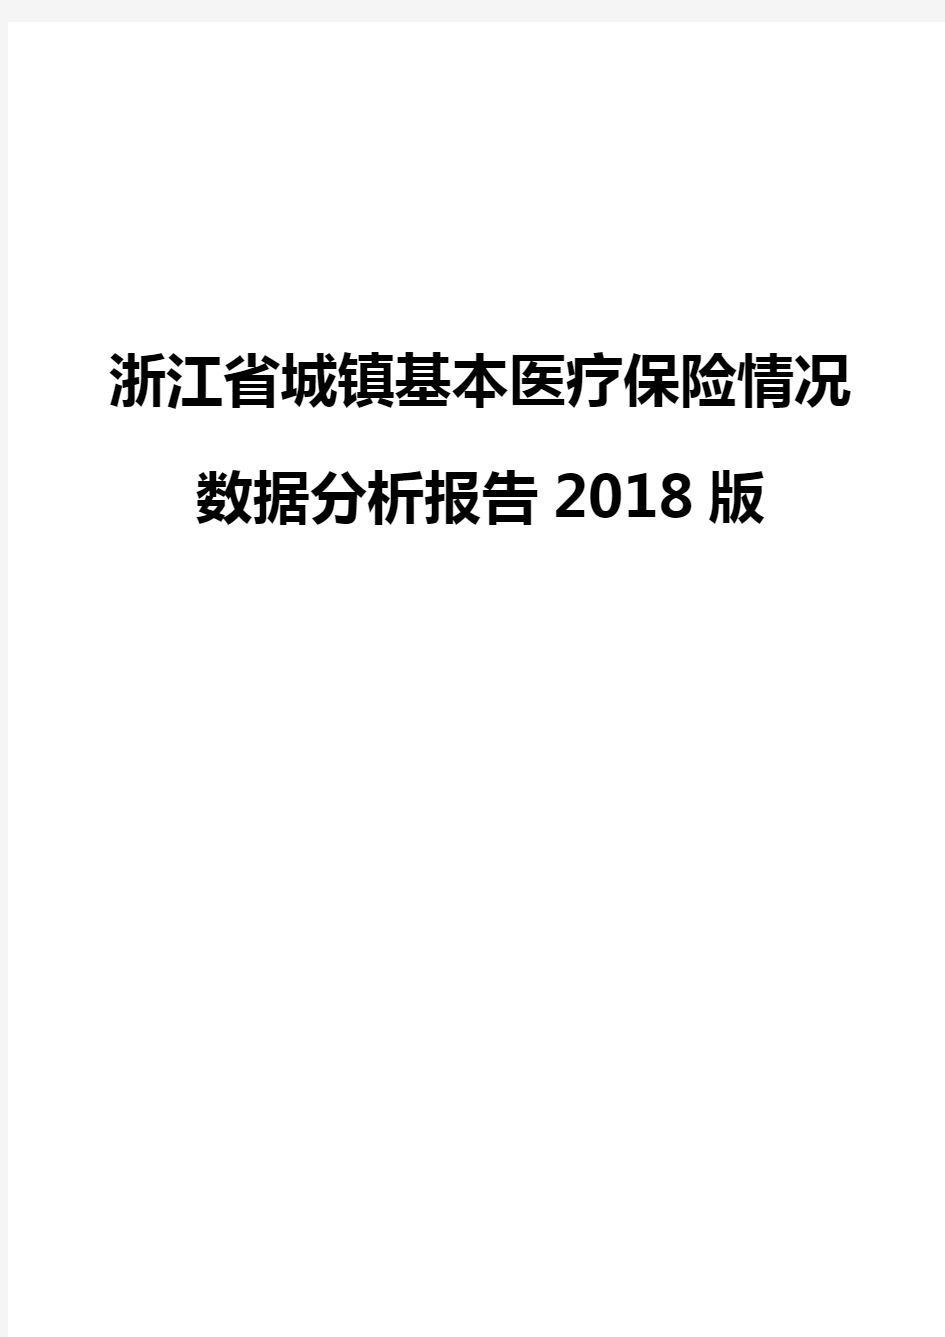 浙江省城镇基本医疗保险情况数据分析报告2018版